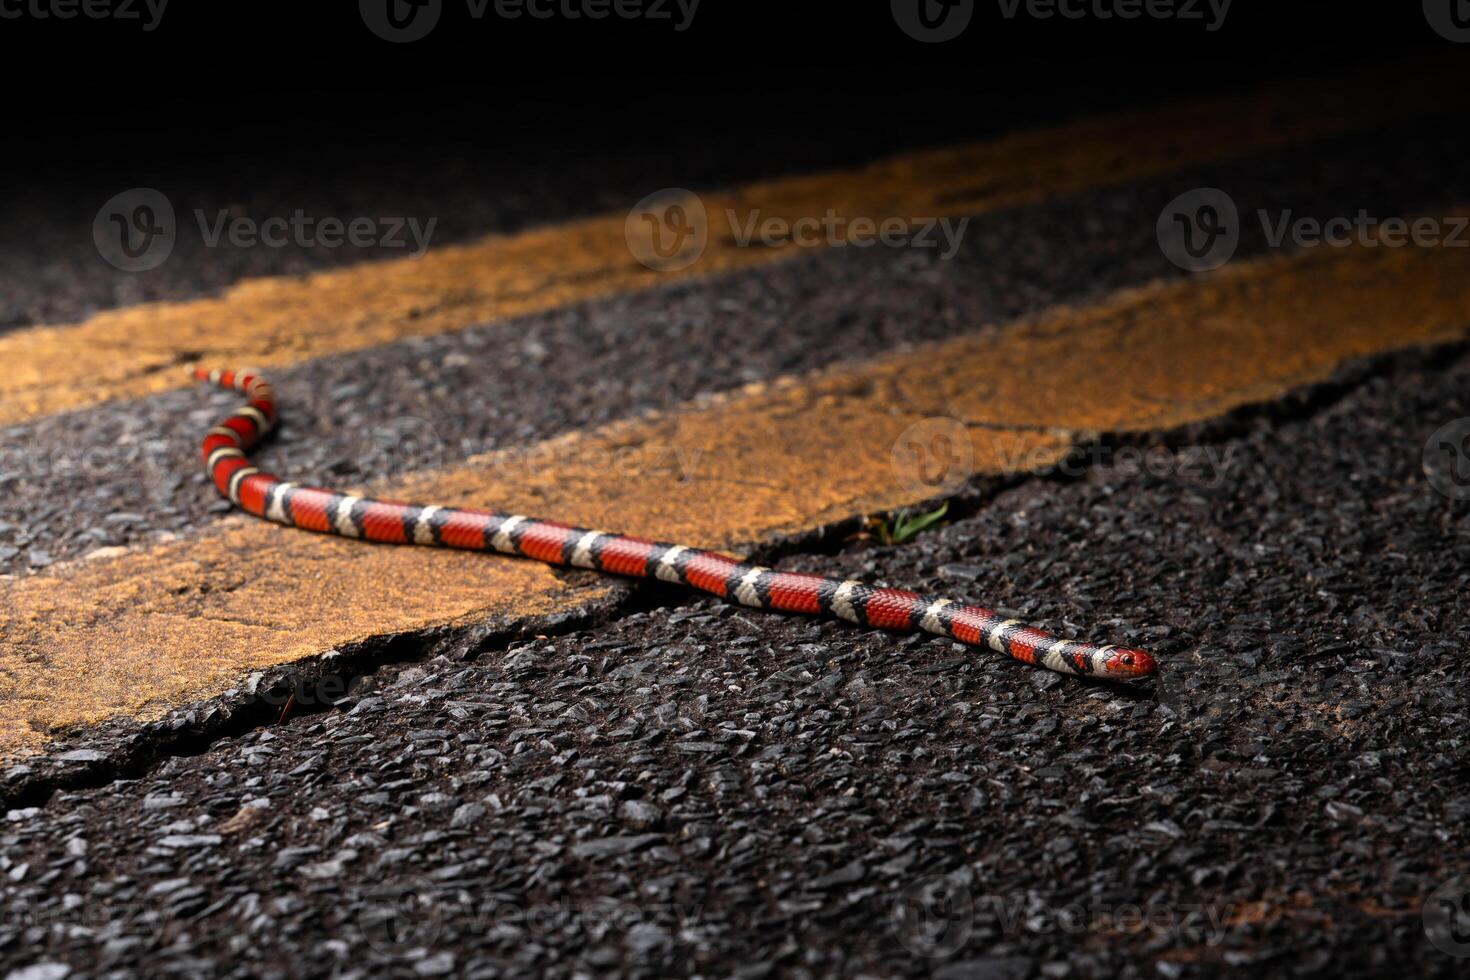 escarlata Rey serpiente, lampropeltis elapsoides foto